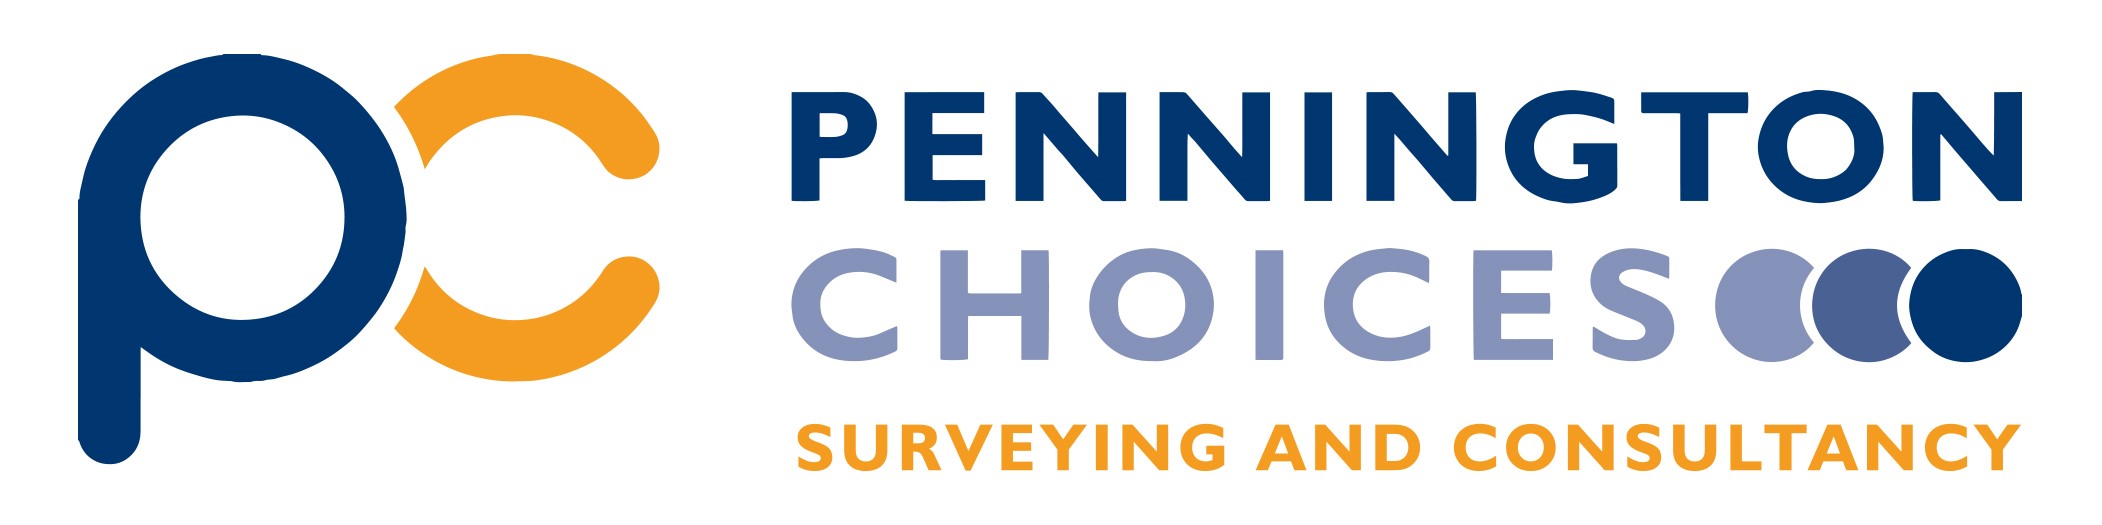 Pennington Choices Ltd